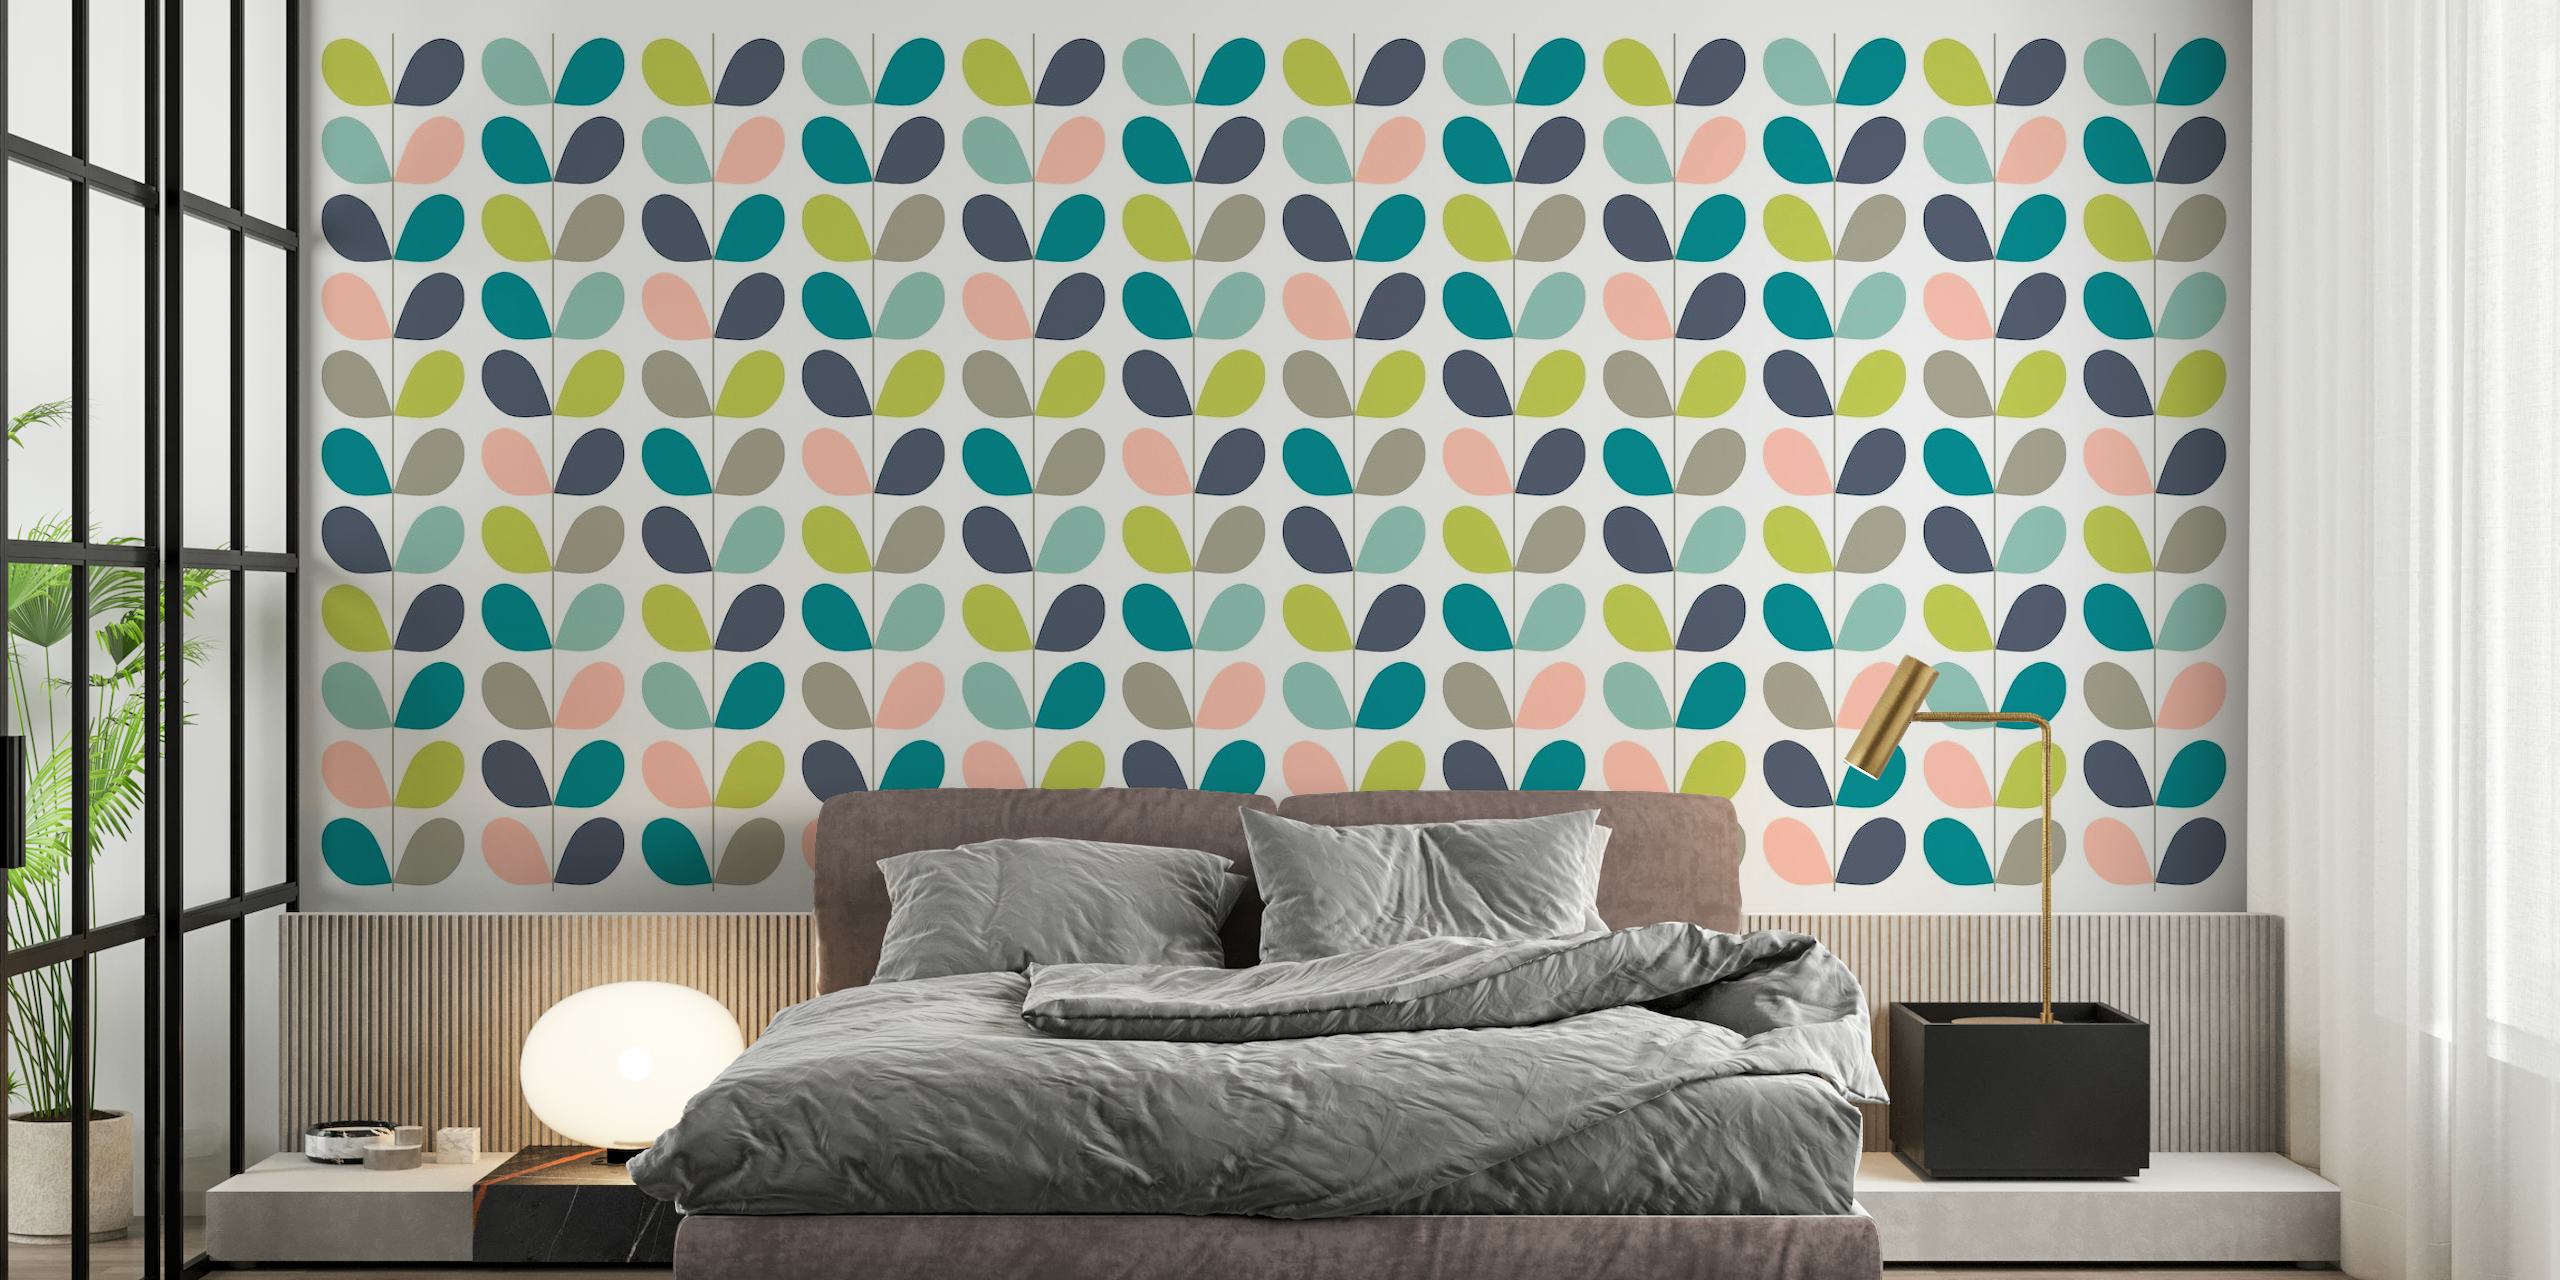 Stiliserade pastellblad i ett minimalistiskt väggmålningsmönster